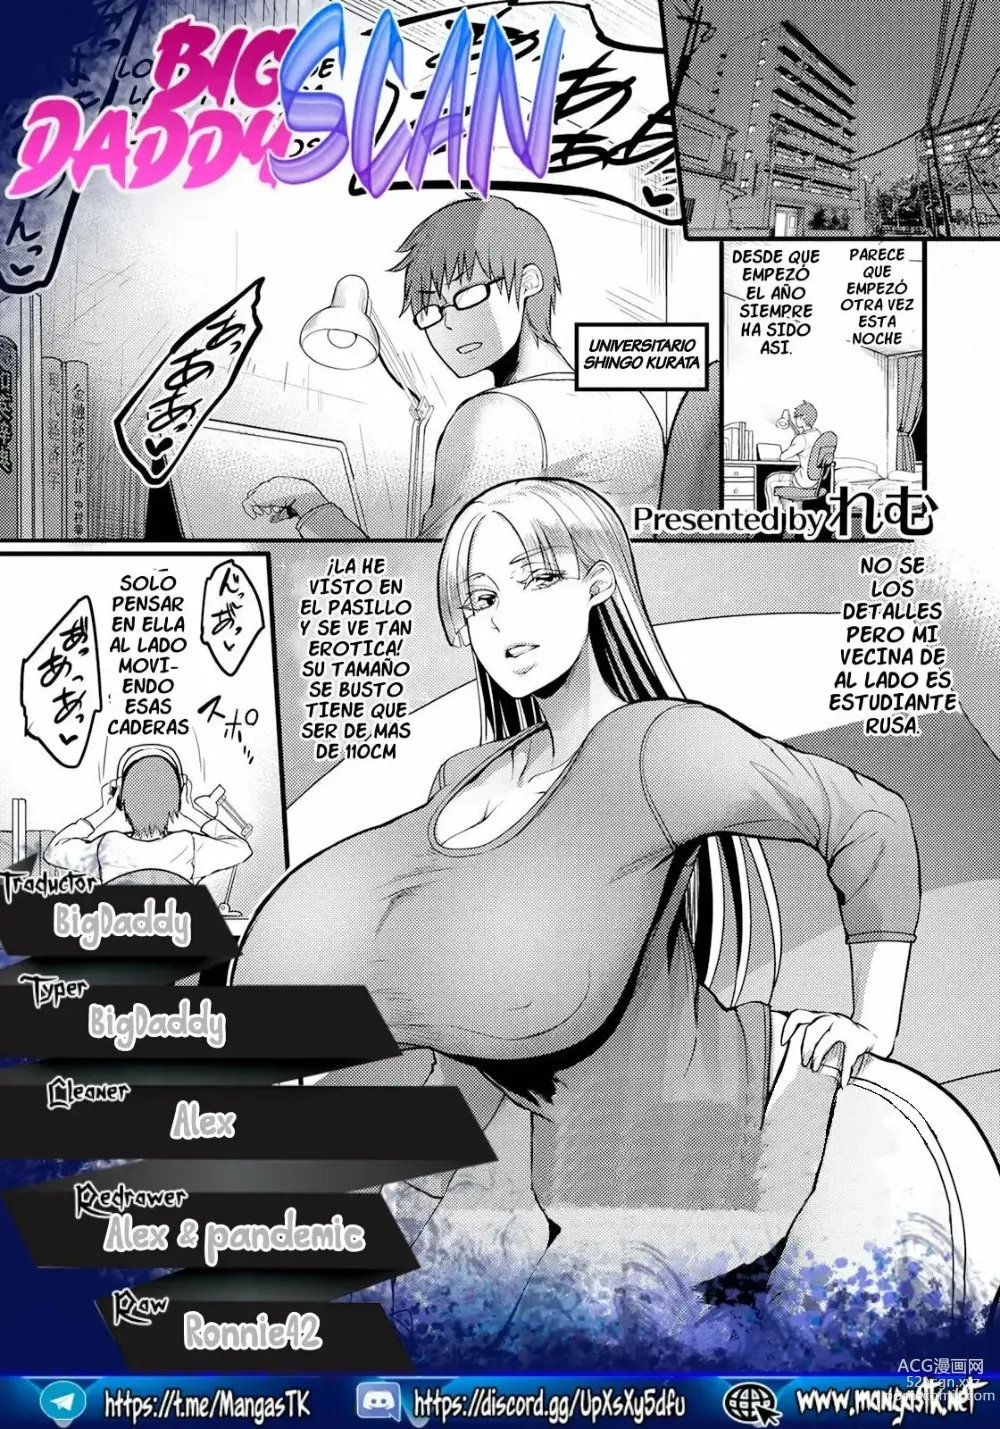 Page 22 of manga La Rusa de Al Lado Es Ruidosa